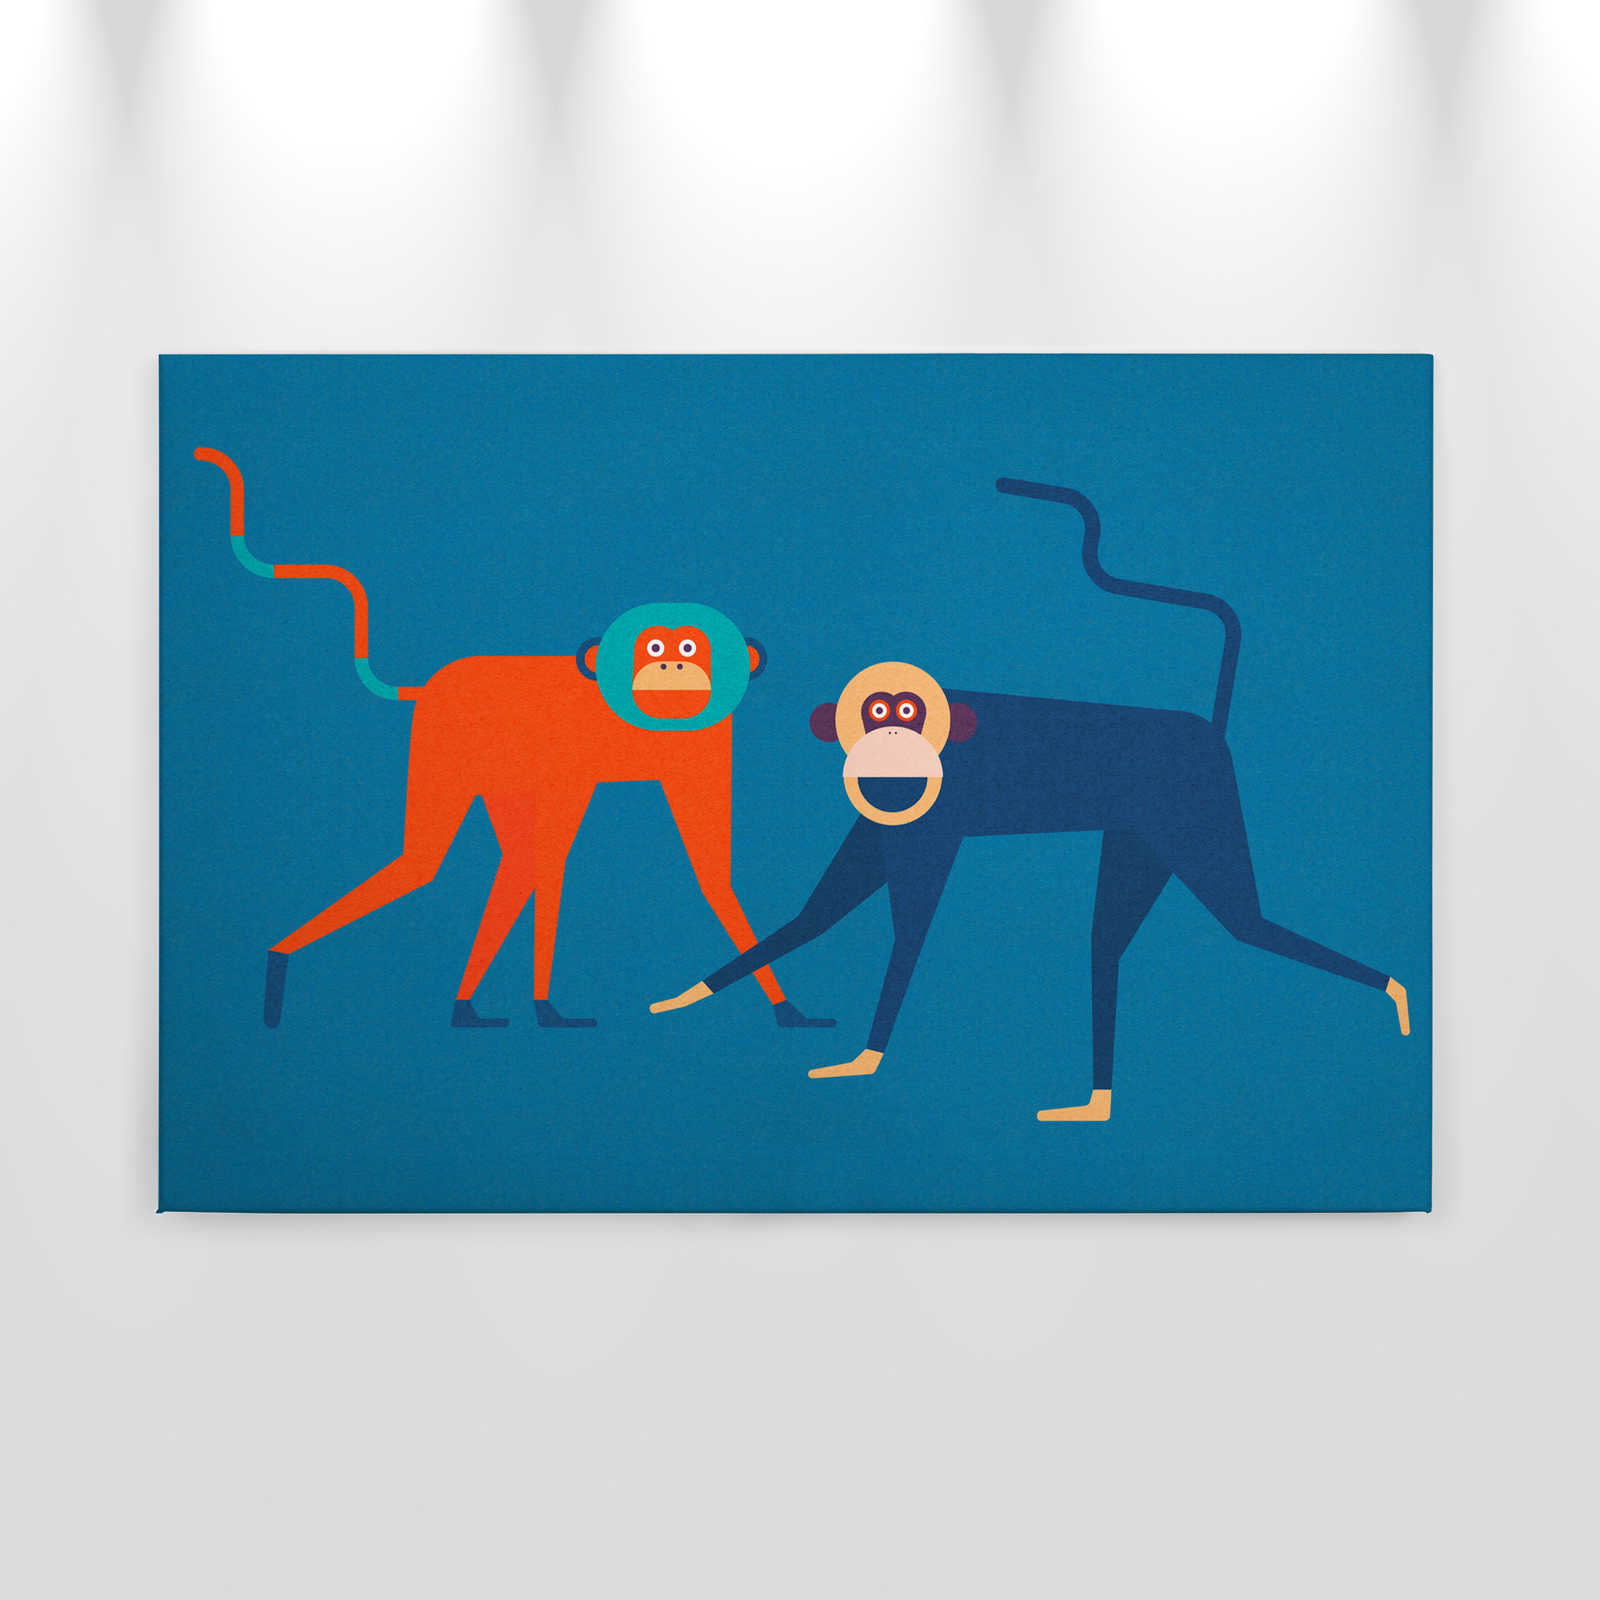             Monkey Business 2 - Pintura en lienzo Pandilla de monos en estilo cómic - Estructura de cartón - 0,90 m x 0,60 m
        